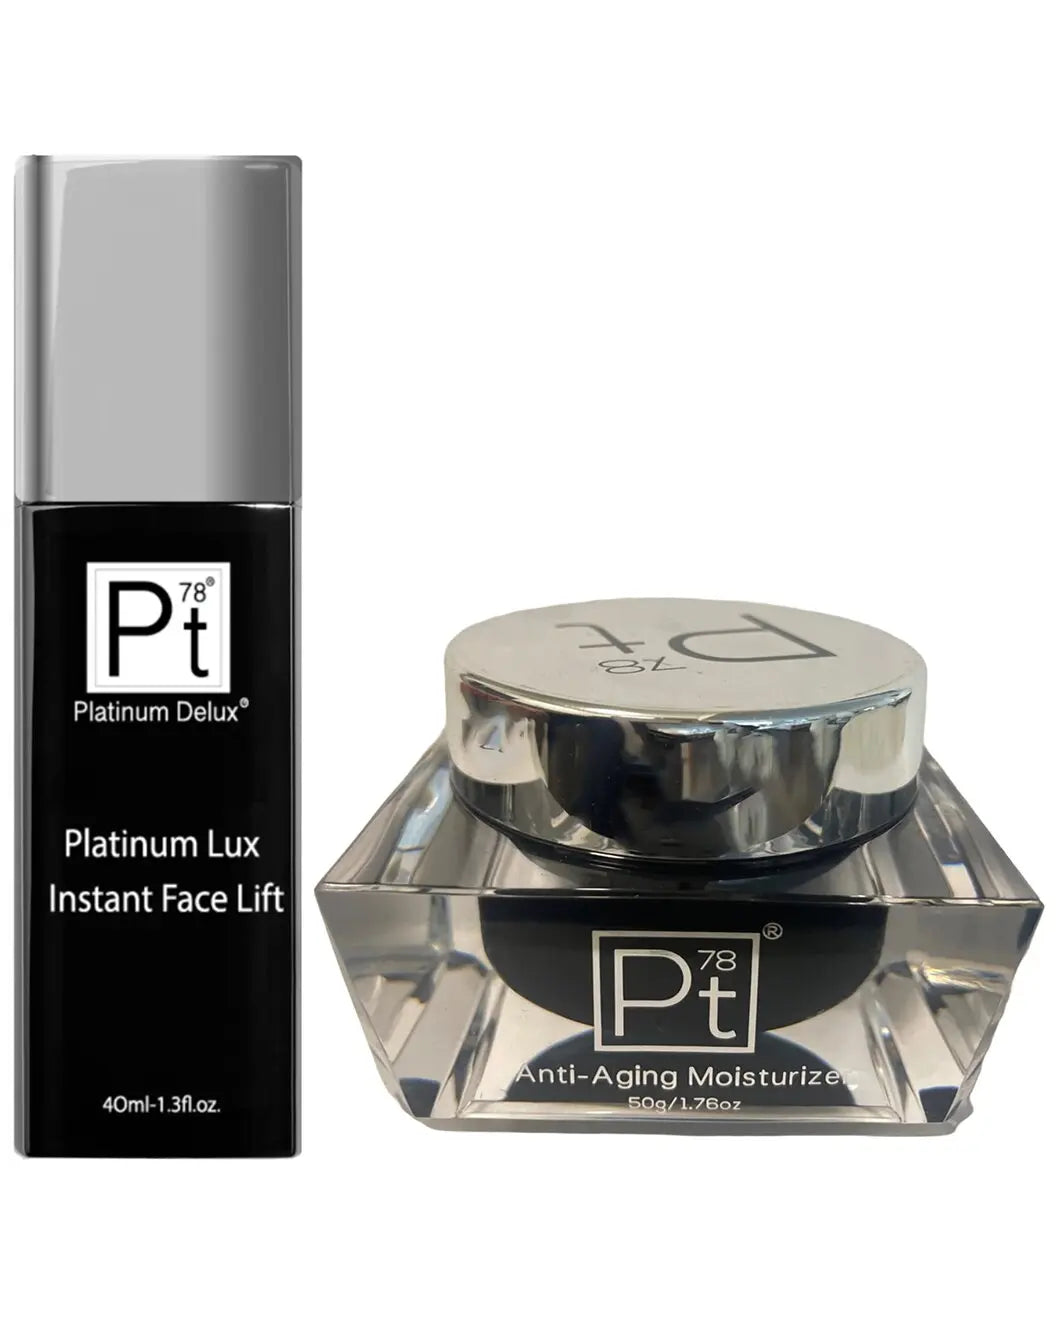 Anti-Aging-Moisturizer-Lux-Instant-Face-Lift-2pc-Set Platinum Delux ®